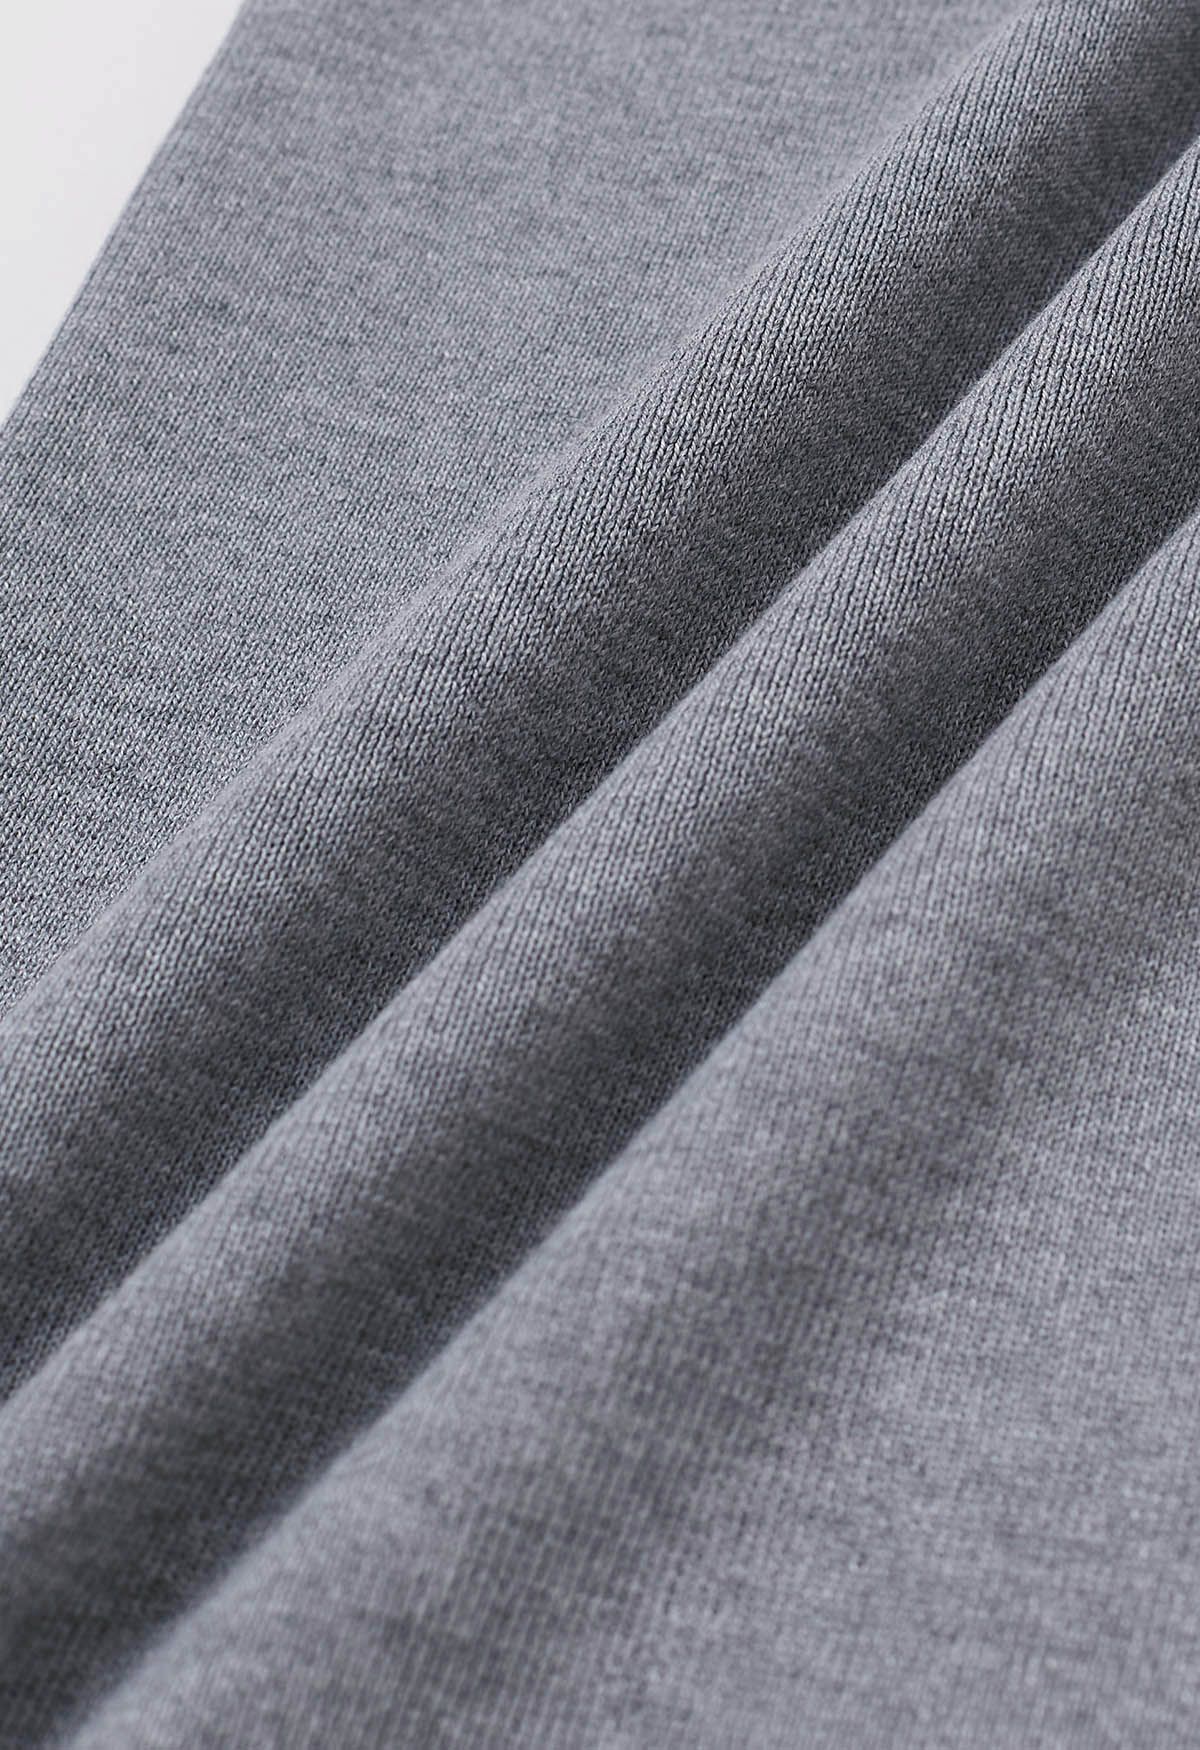 Set aus Strickjacke und Hose mit abstraktem Print und Knöpfen in Grau